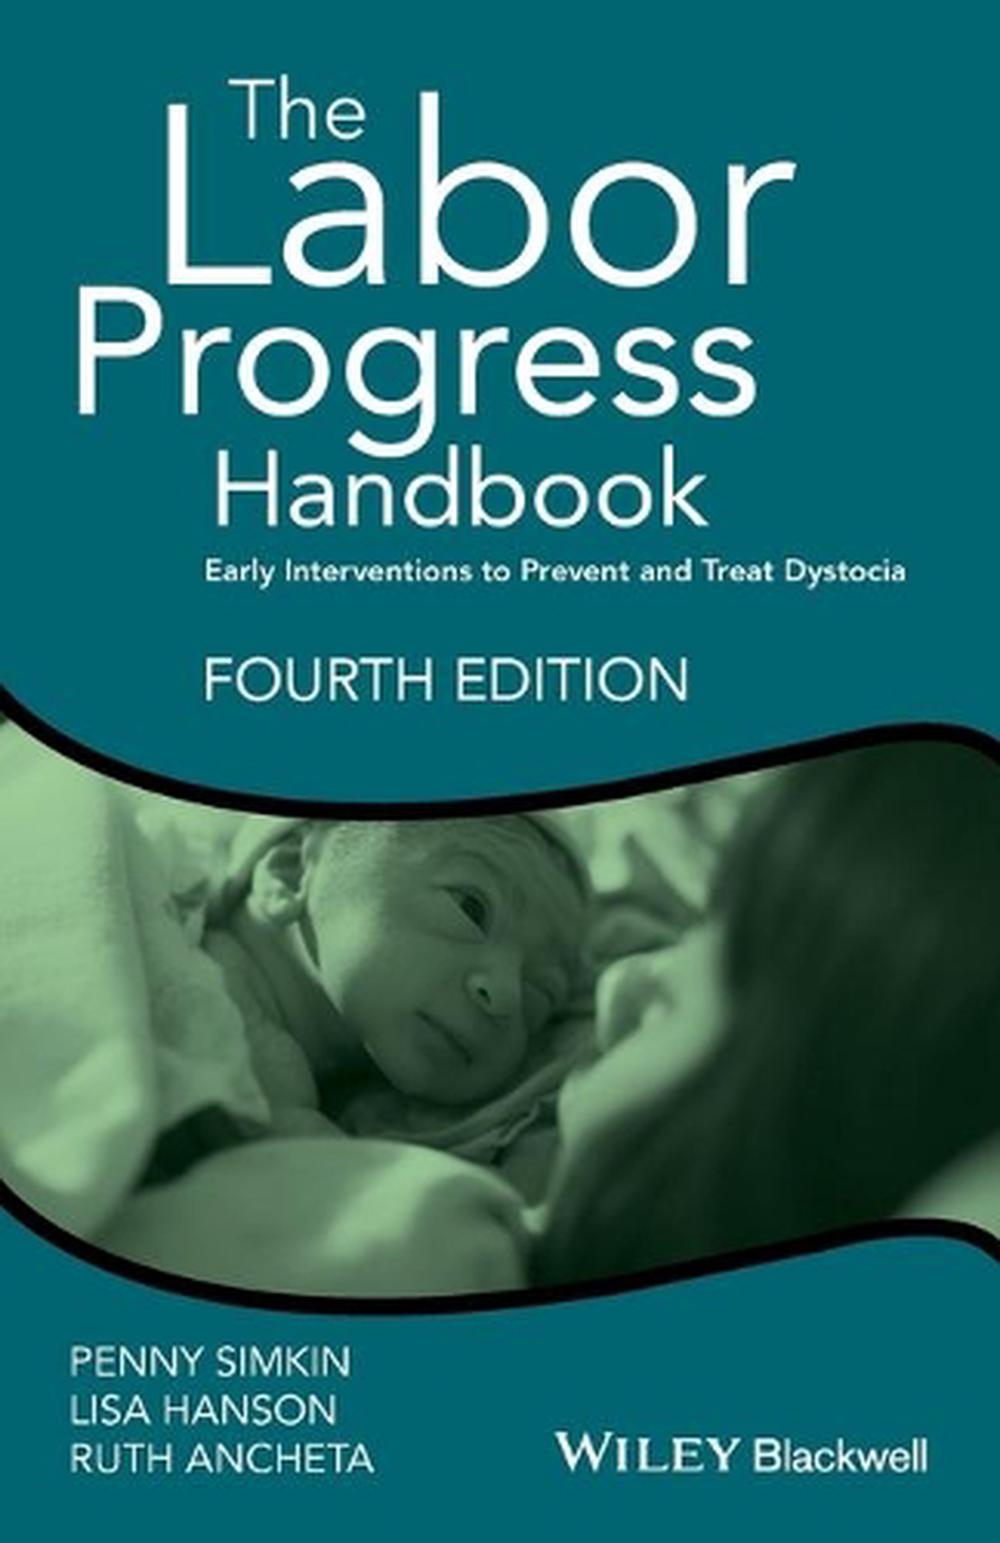 Labor Progress Handbook by Penny Simkin, Paperback, 9781119170464 Buy